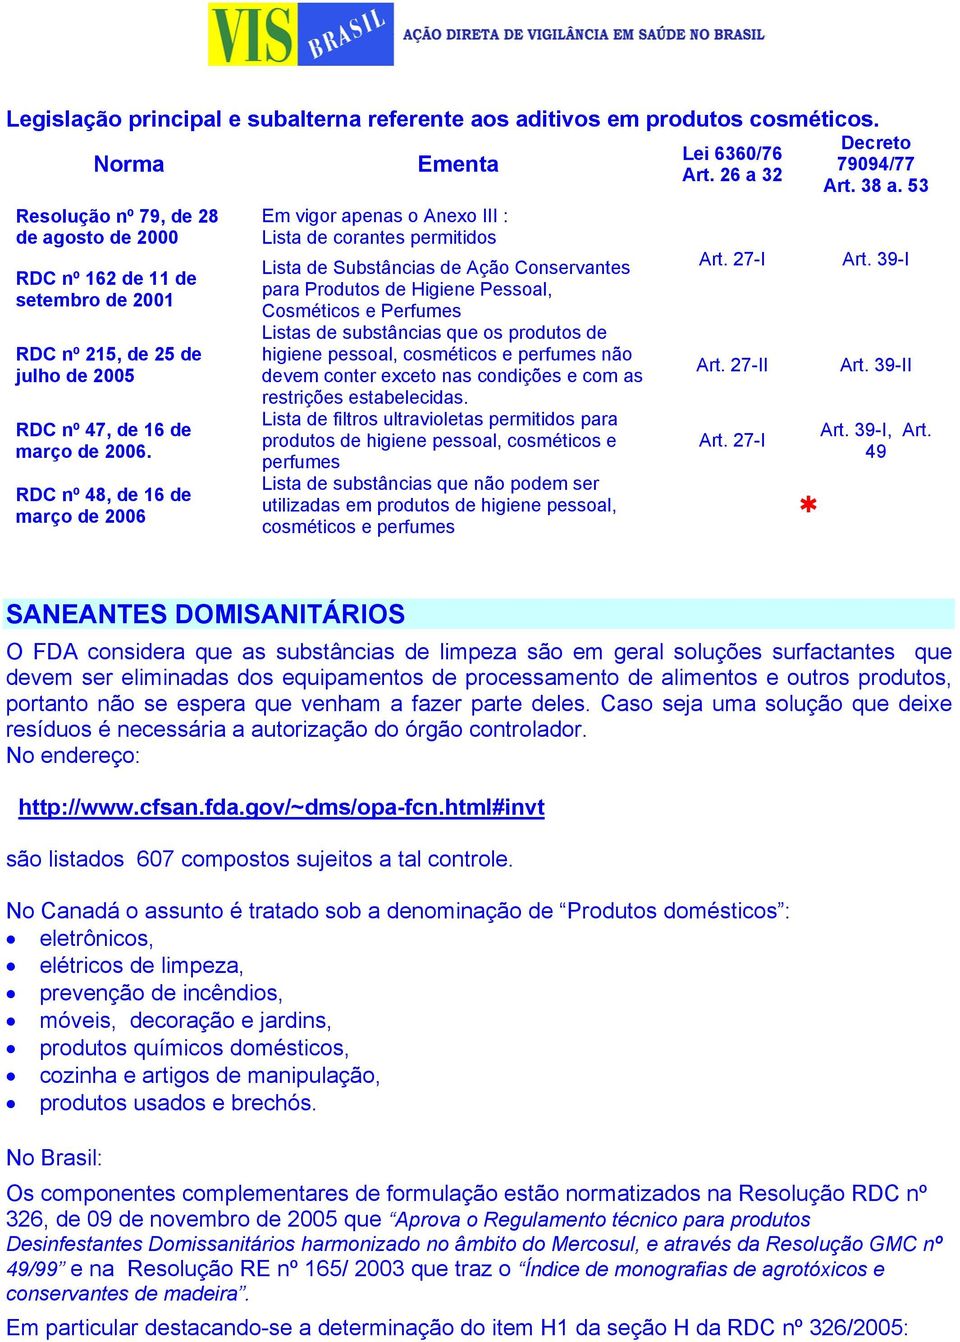 RDC nº 48, de 16 de março de 2006 Ementa Em vigor apenas o Anexo III : Lista de corantes permitidos Lista de Substâncias de Ação Conservantes para Produtos de Higiene Pessoal, Cosméticos e Perfumes